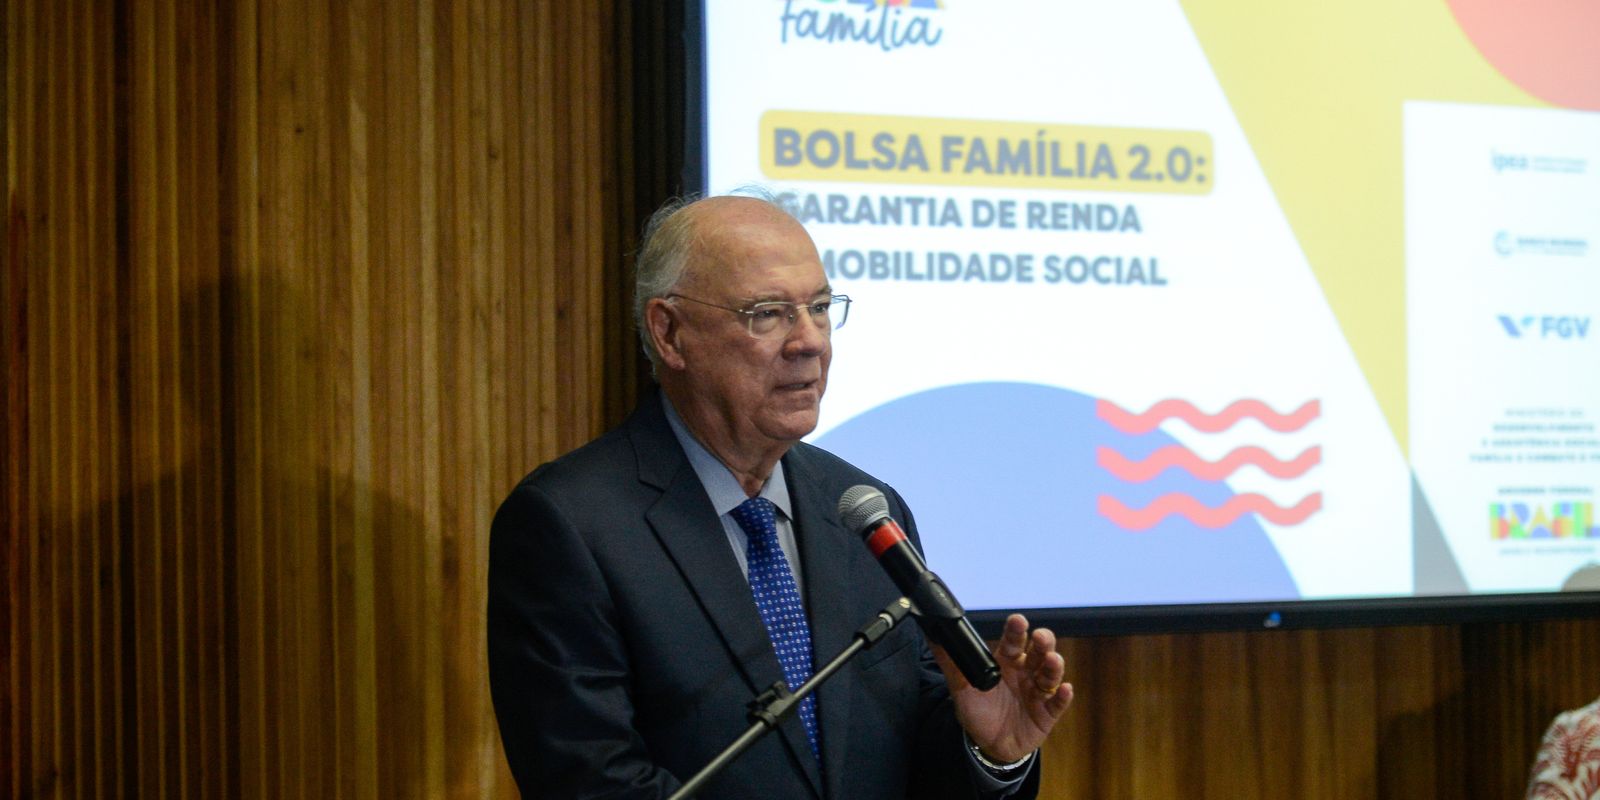 Em junho, Bolsa Família garante renda mínima de R$ 142 per capita